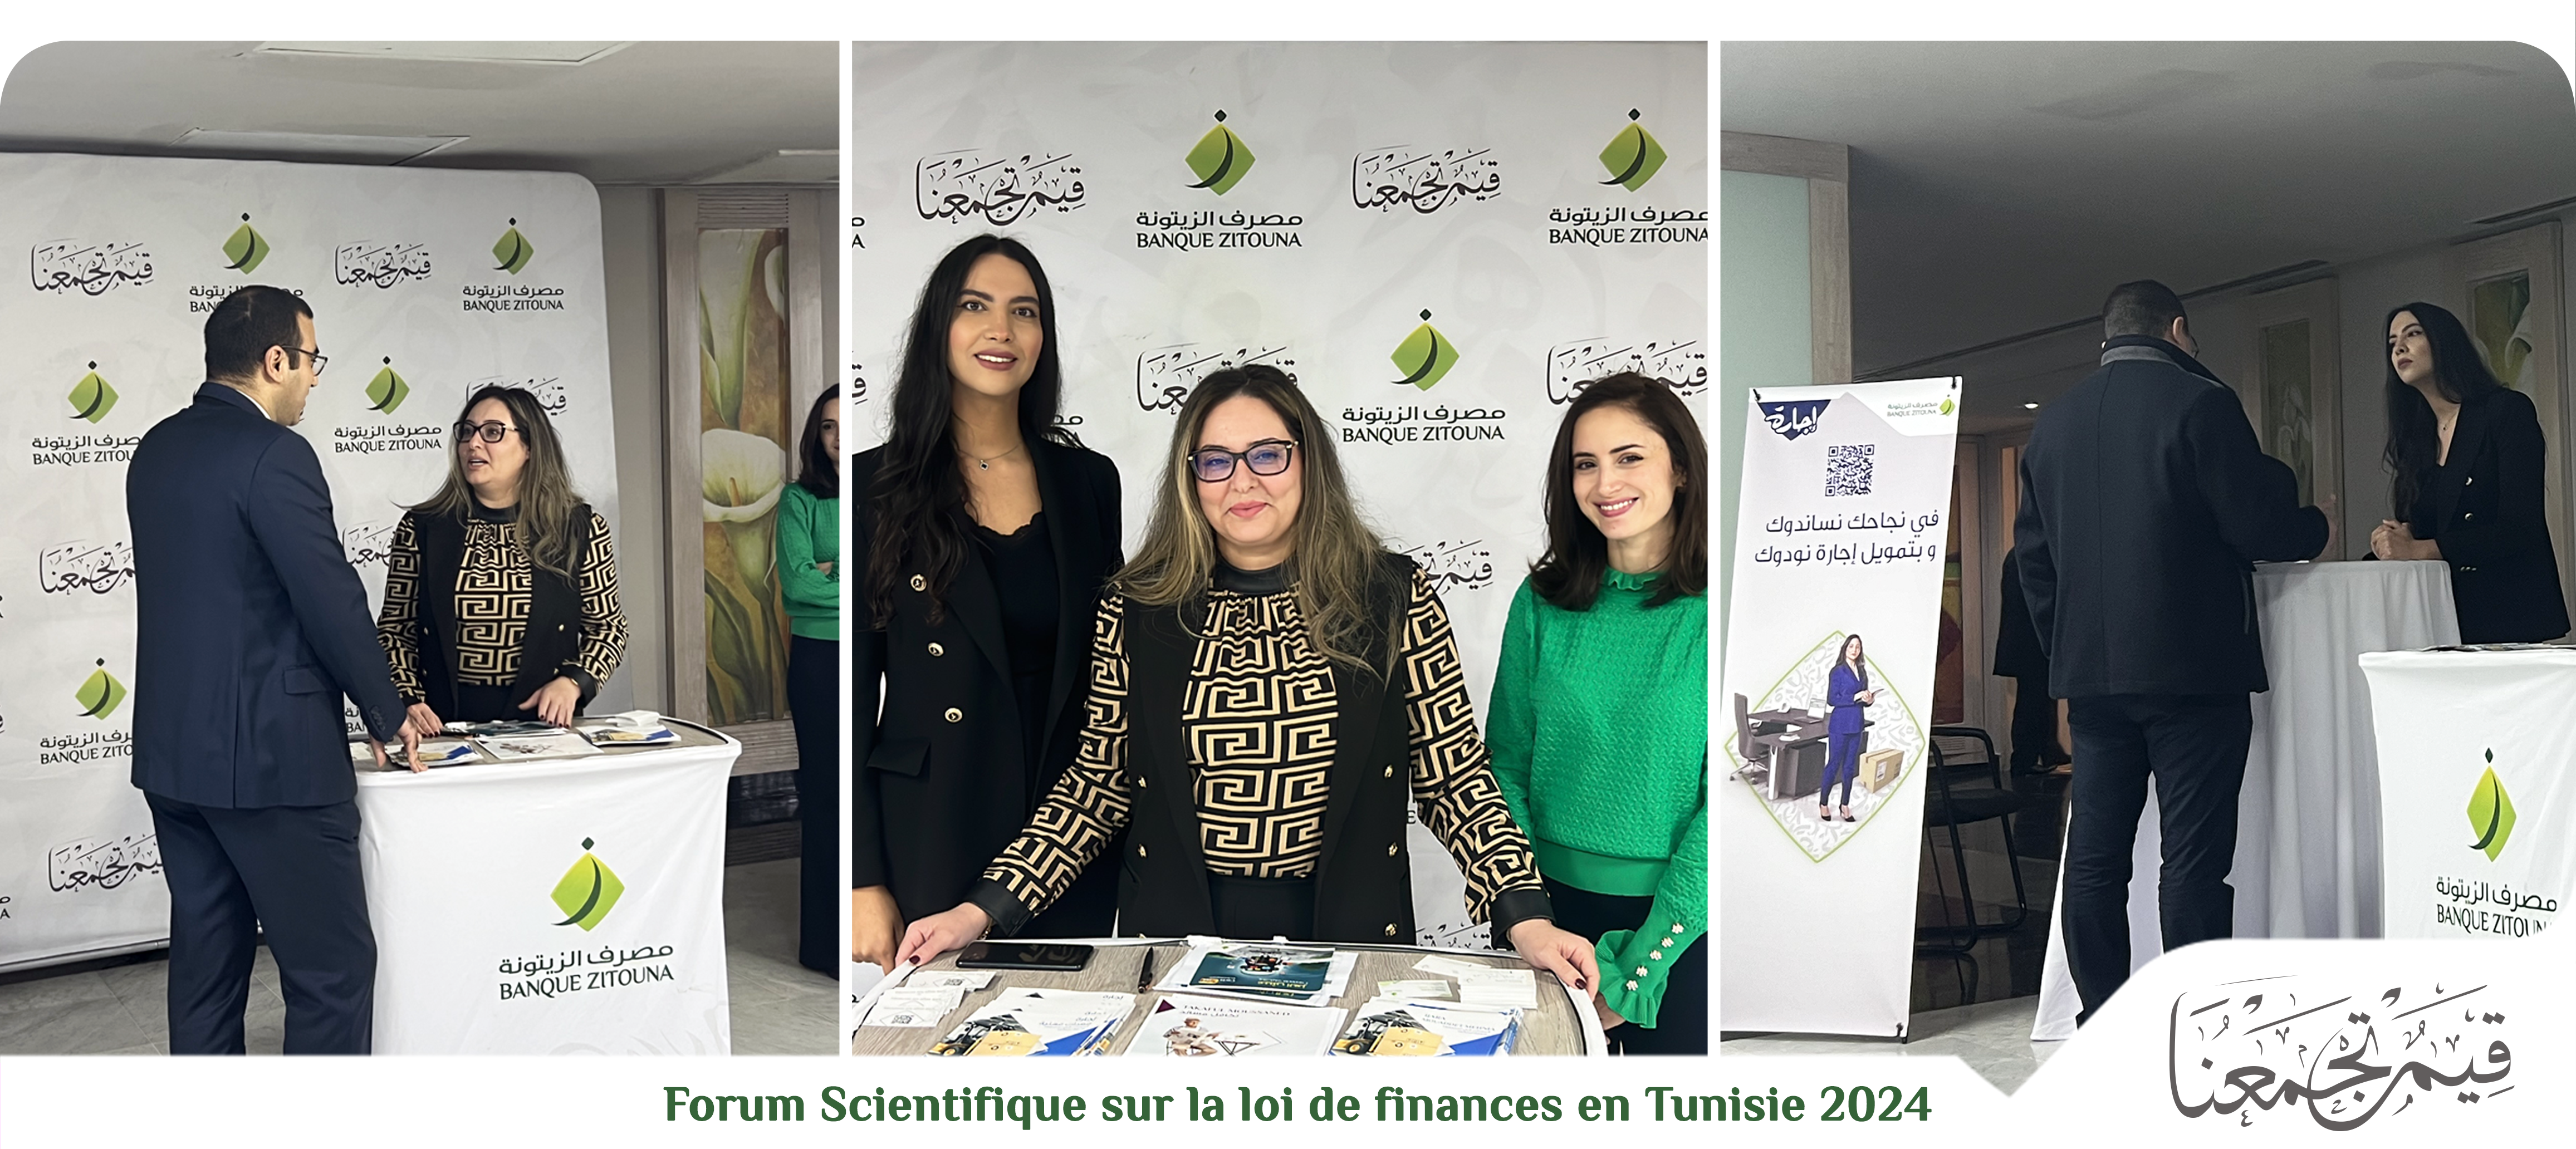 Banque Zitouna sponsor officiel du forum scientifique sur la loi de finances en Tunisie 2024 